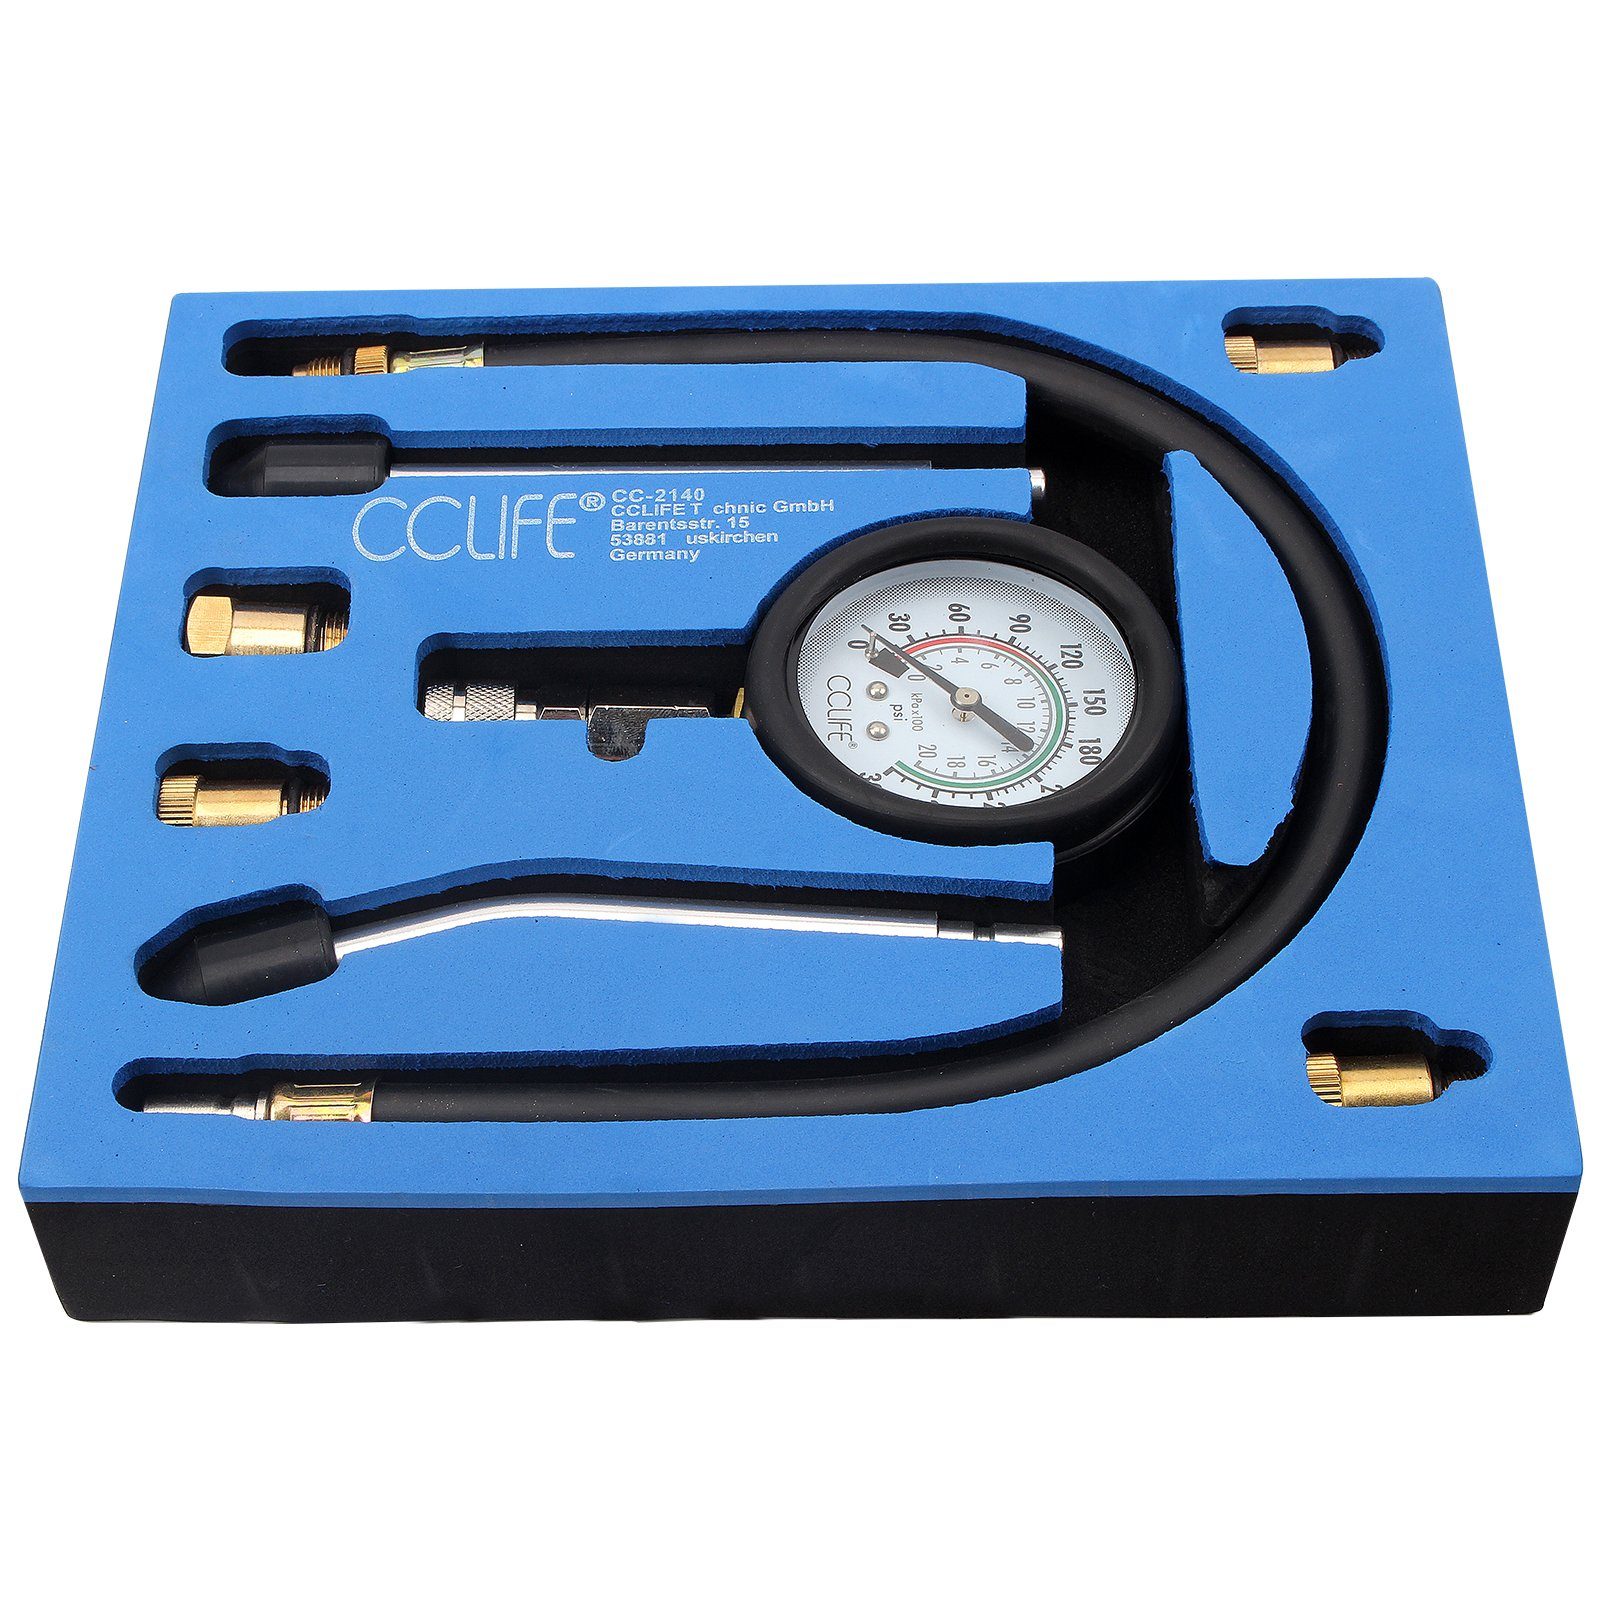 CCLIFE Kassettenabzieher Öldruckprüfer Öldrucktester Set Öl-Meßgerät Öldruckmesser Werkzeug